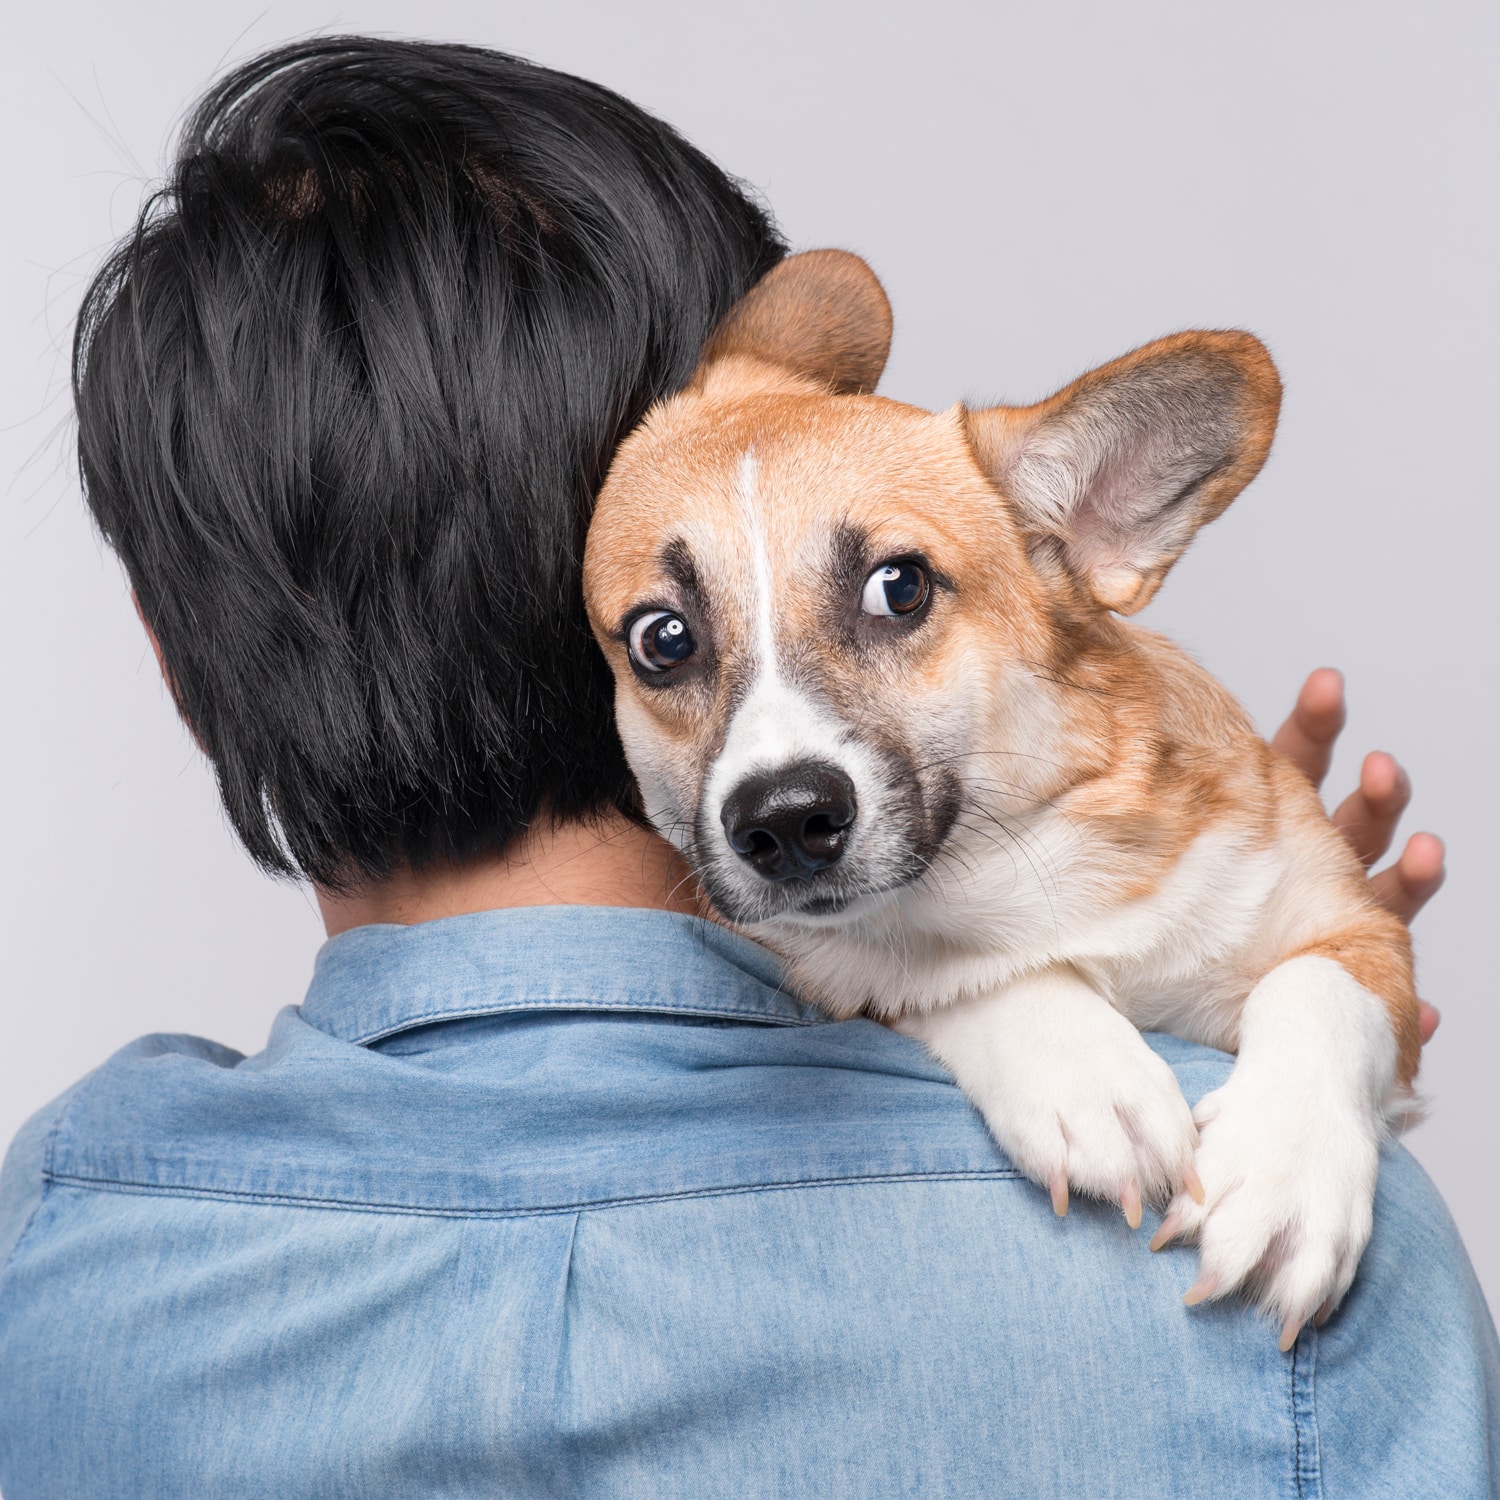 To Hug or Not to Hug Your Dog?